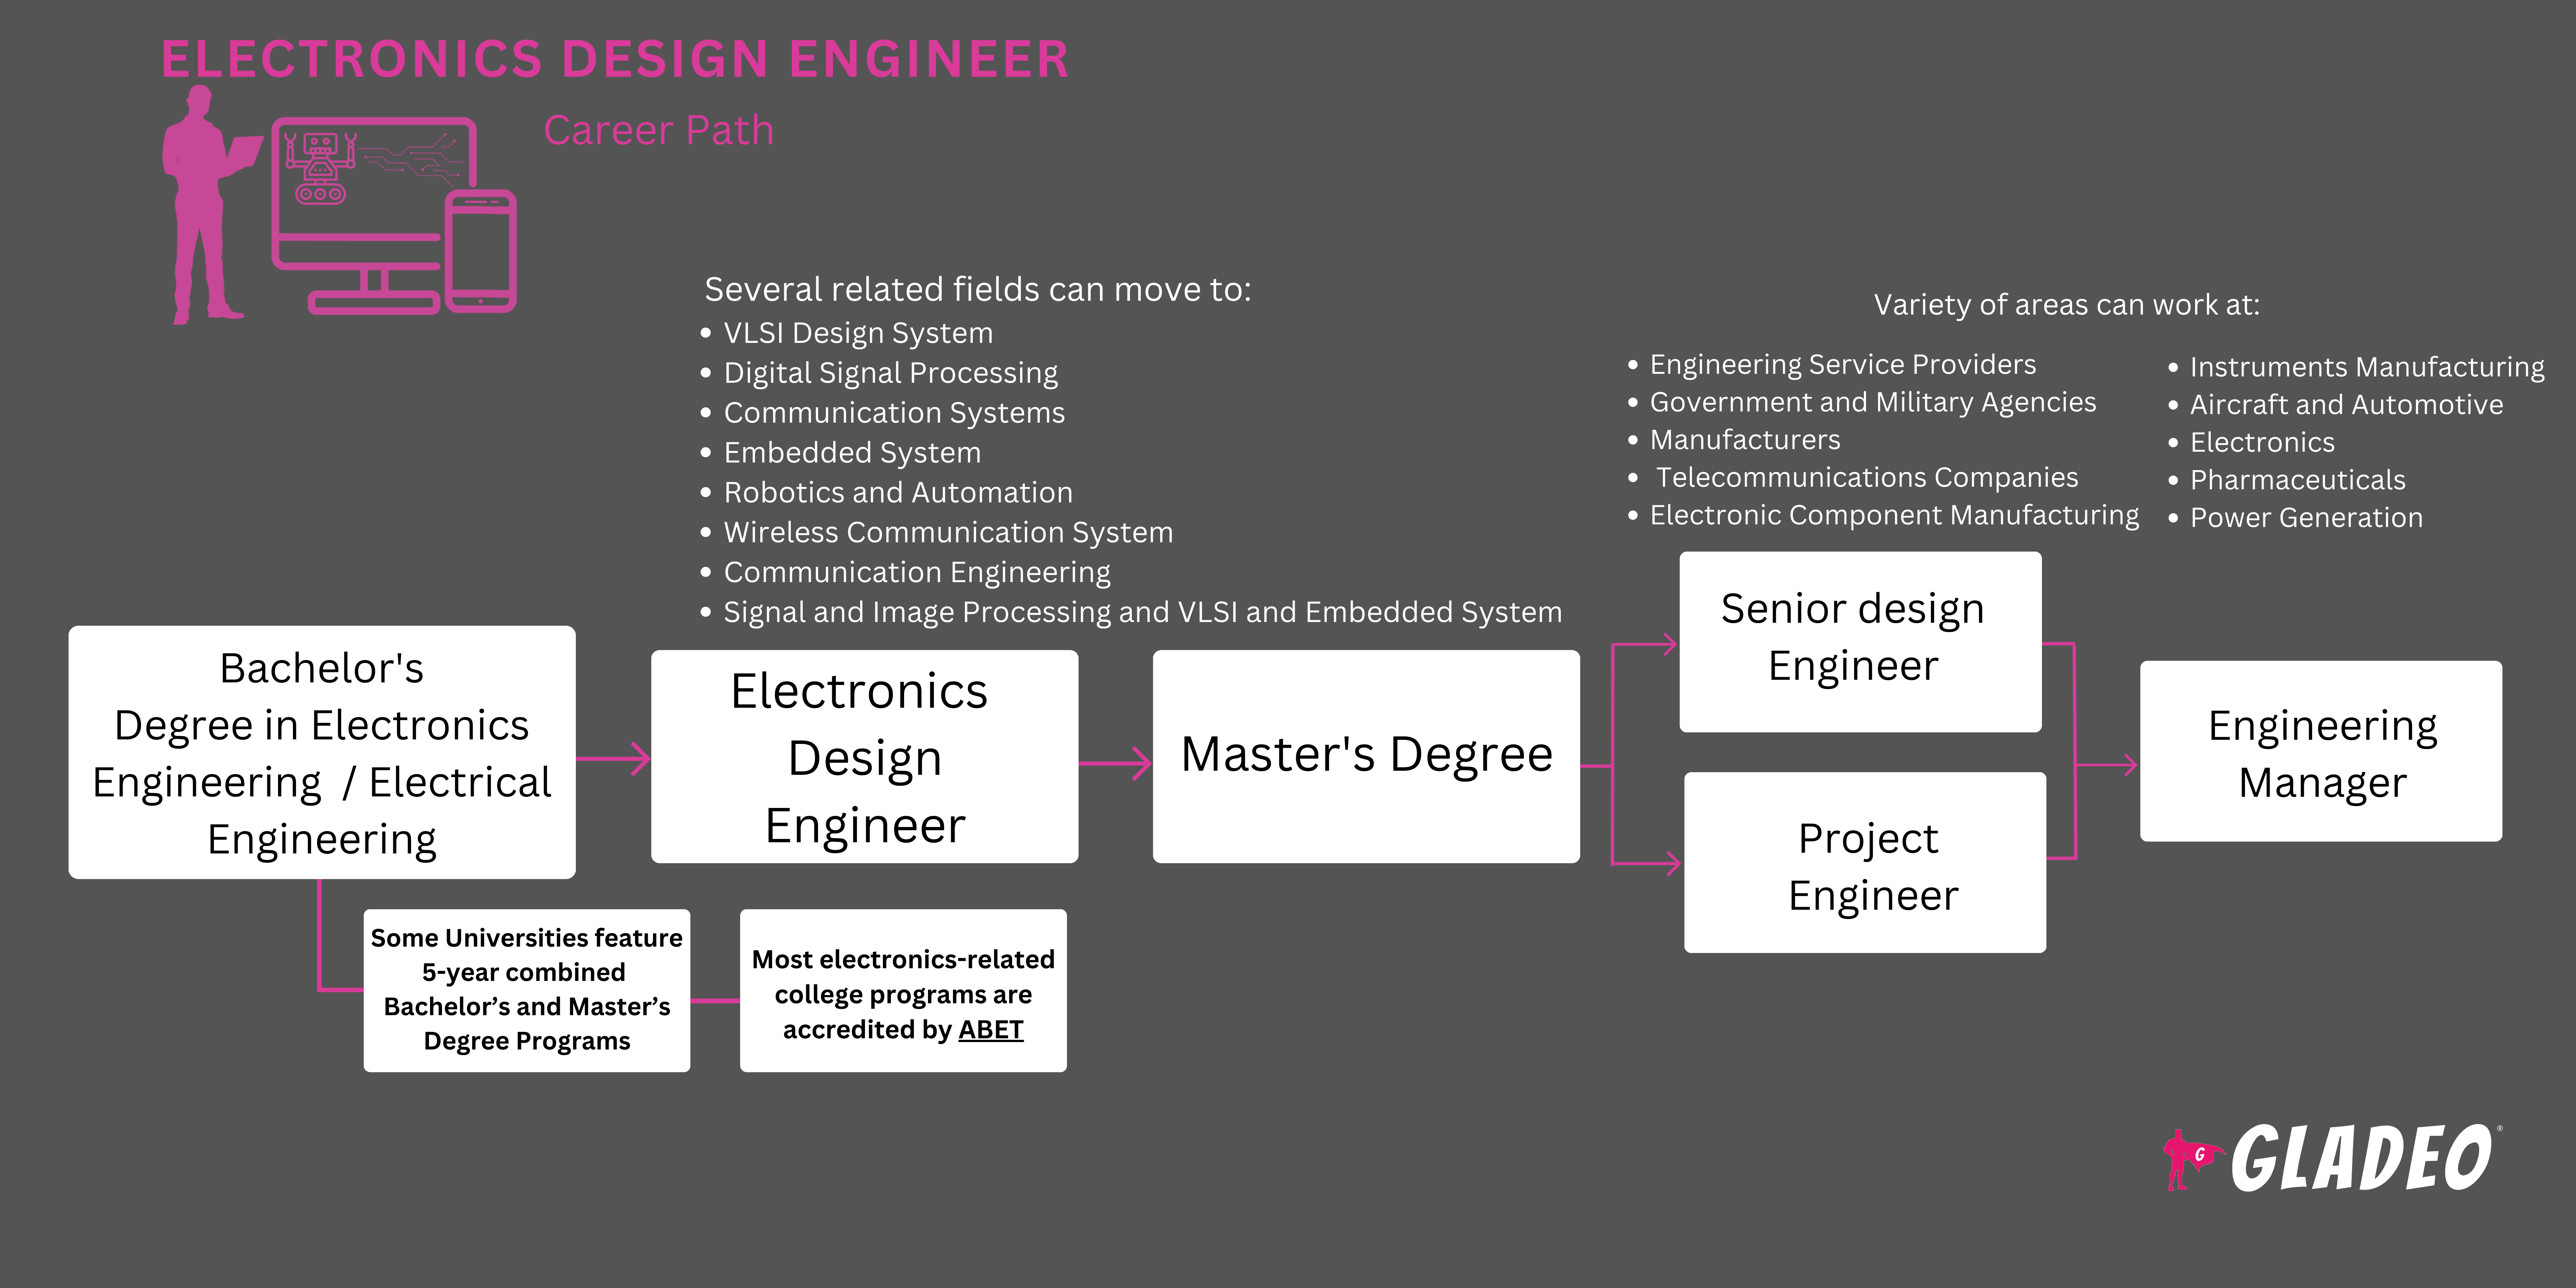 Hoja de ruta del ingeniero de diseño electrónico